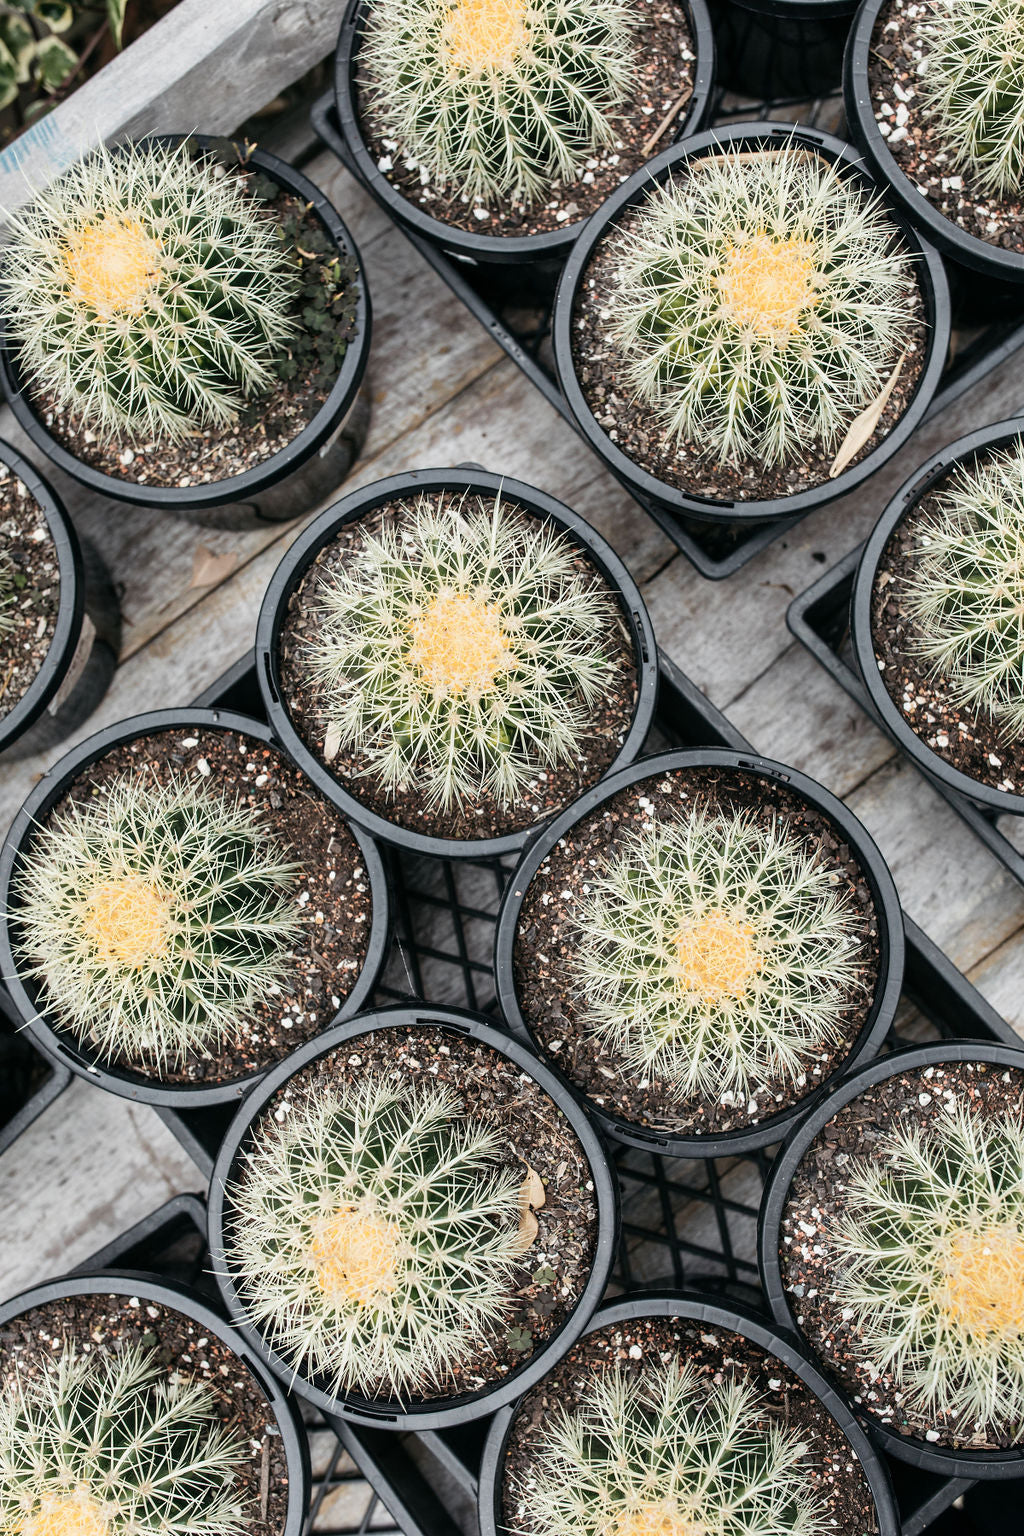 Golden Barrel Cactus (Echinocactus grusonii)